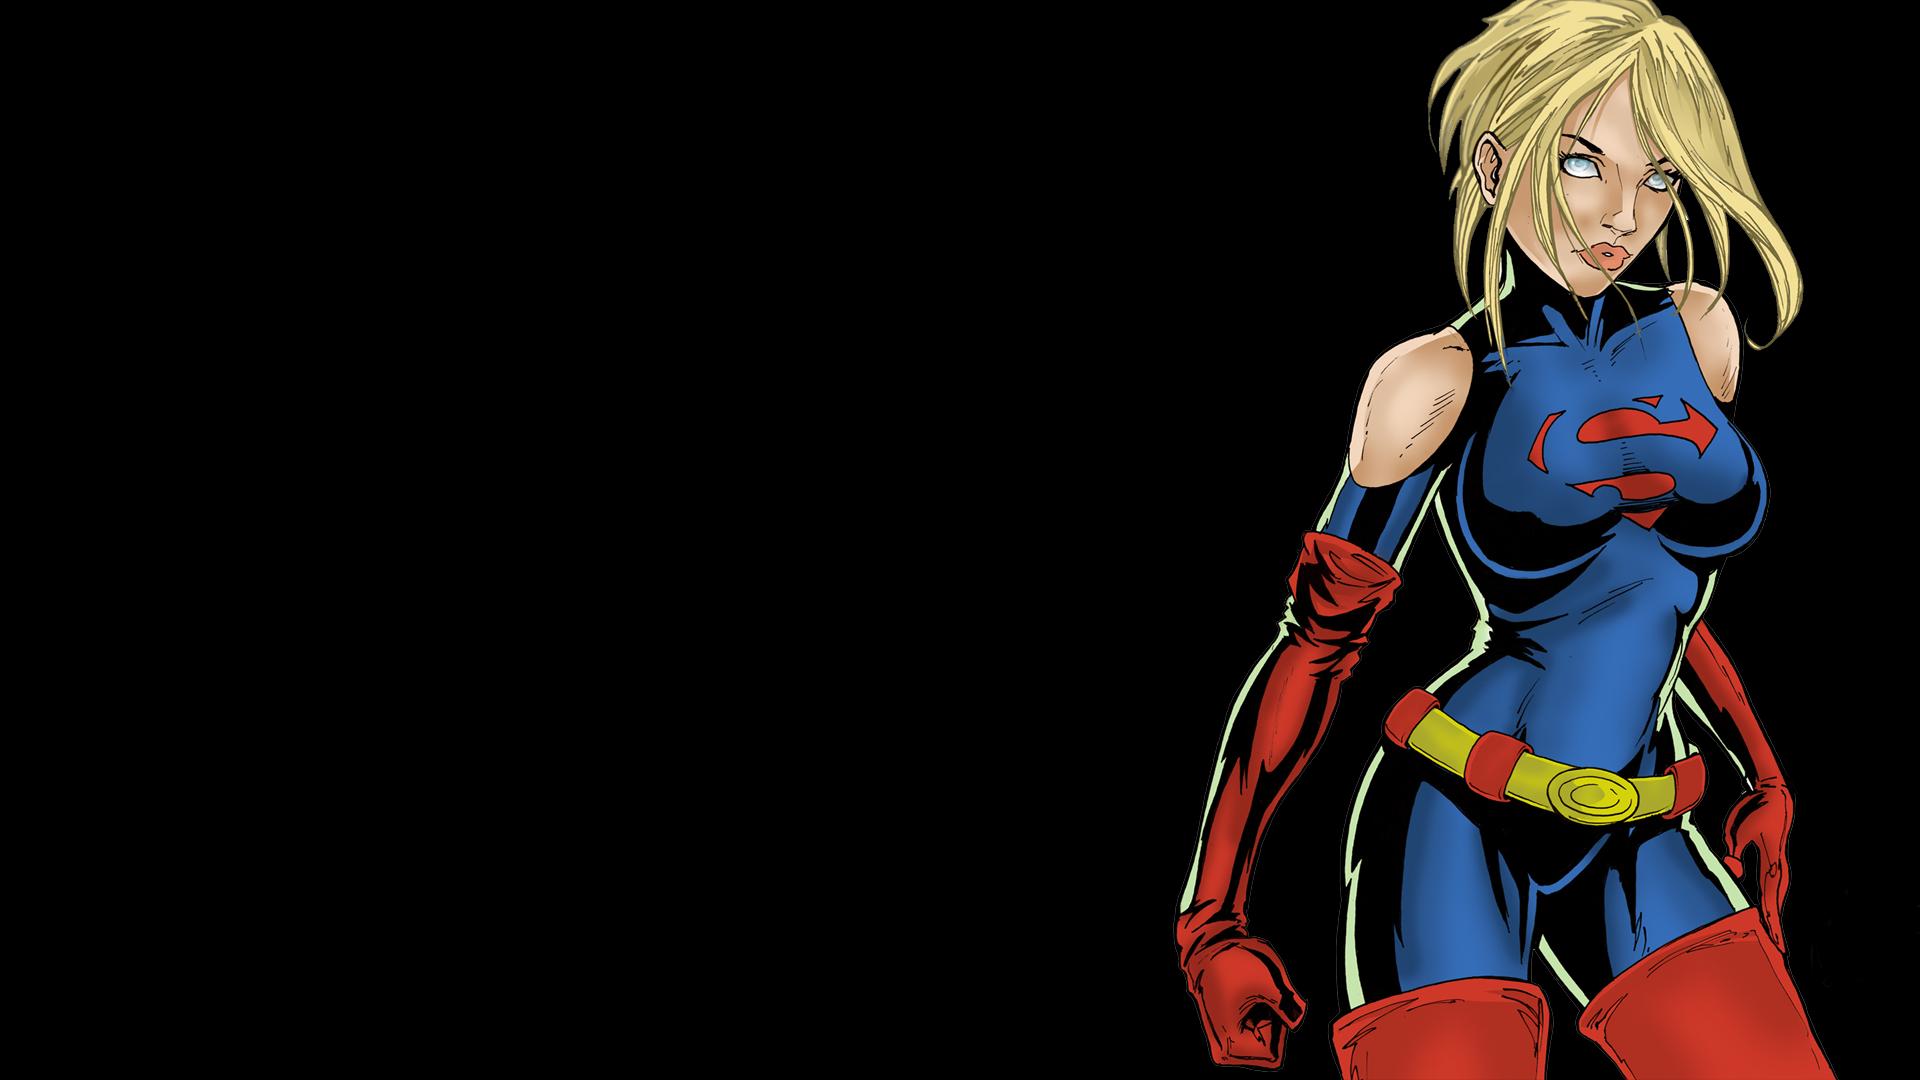 Supergirl DC comics Black superman wallpaper 1920x1080 83191 1920x1080